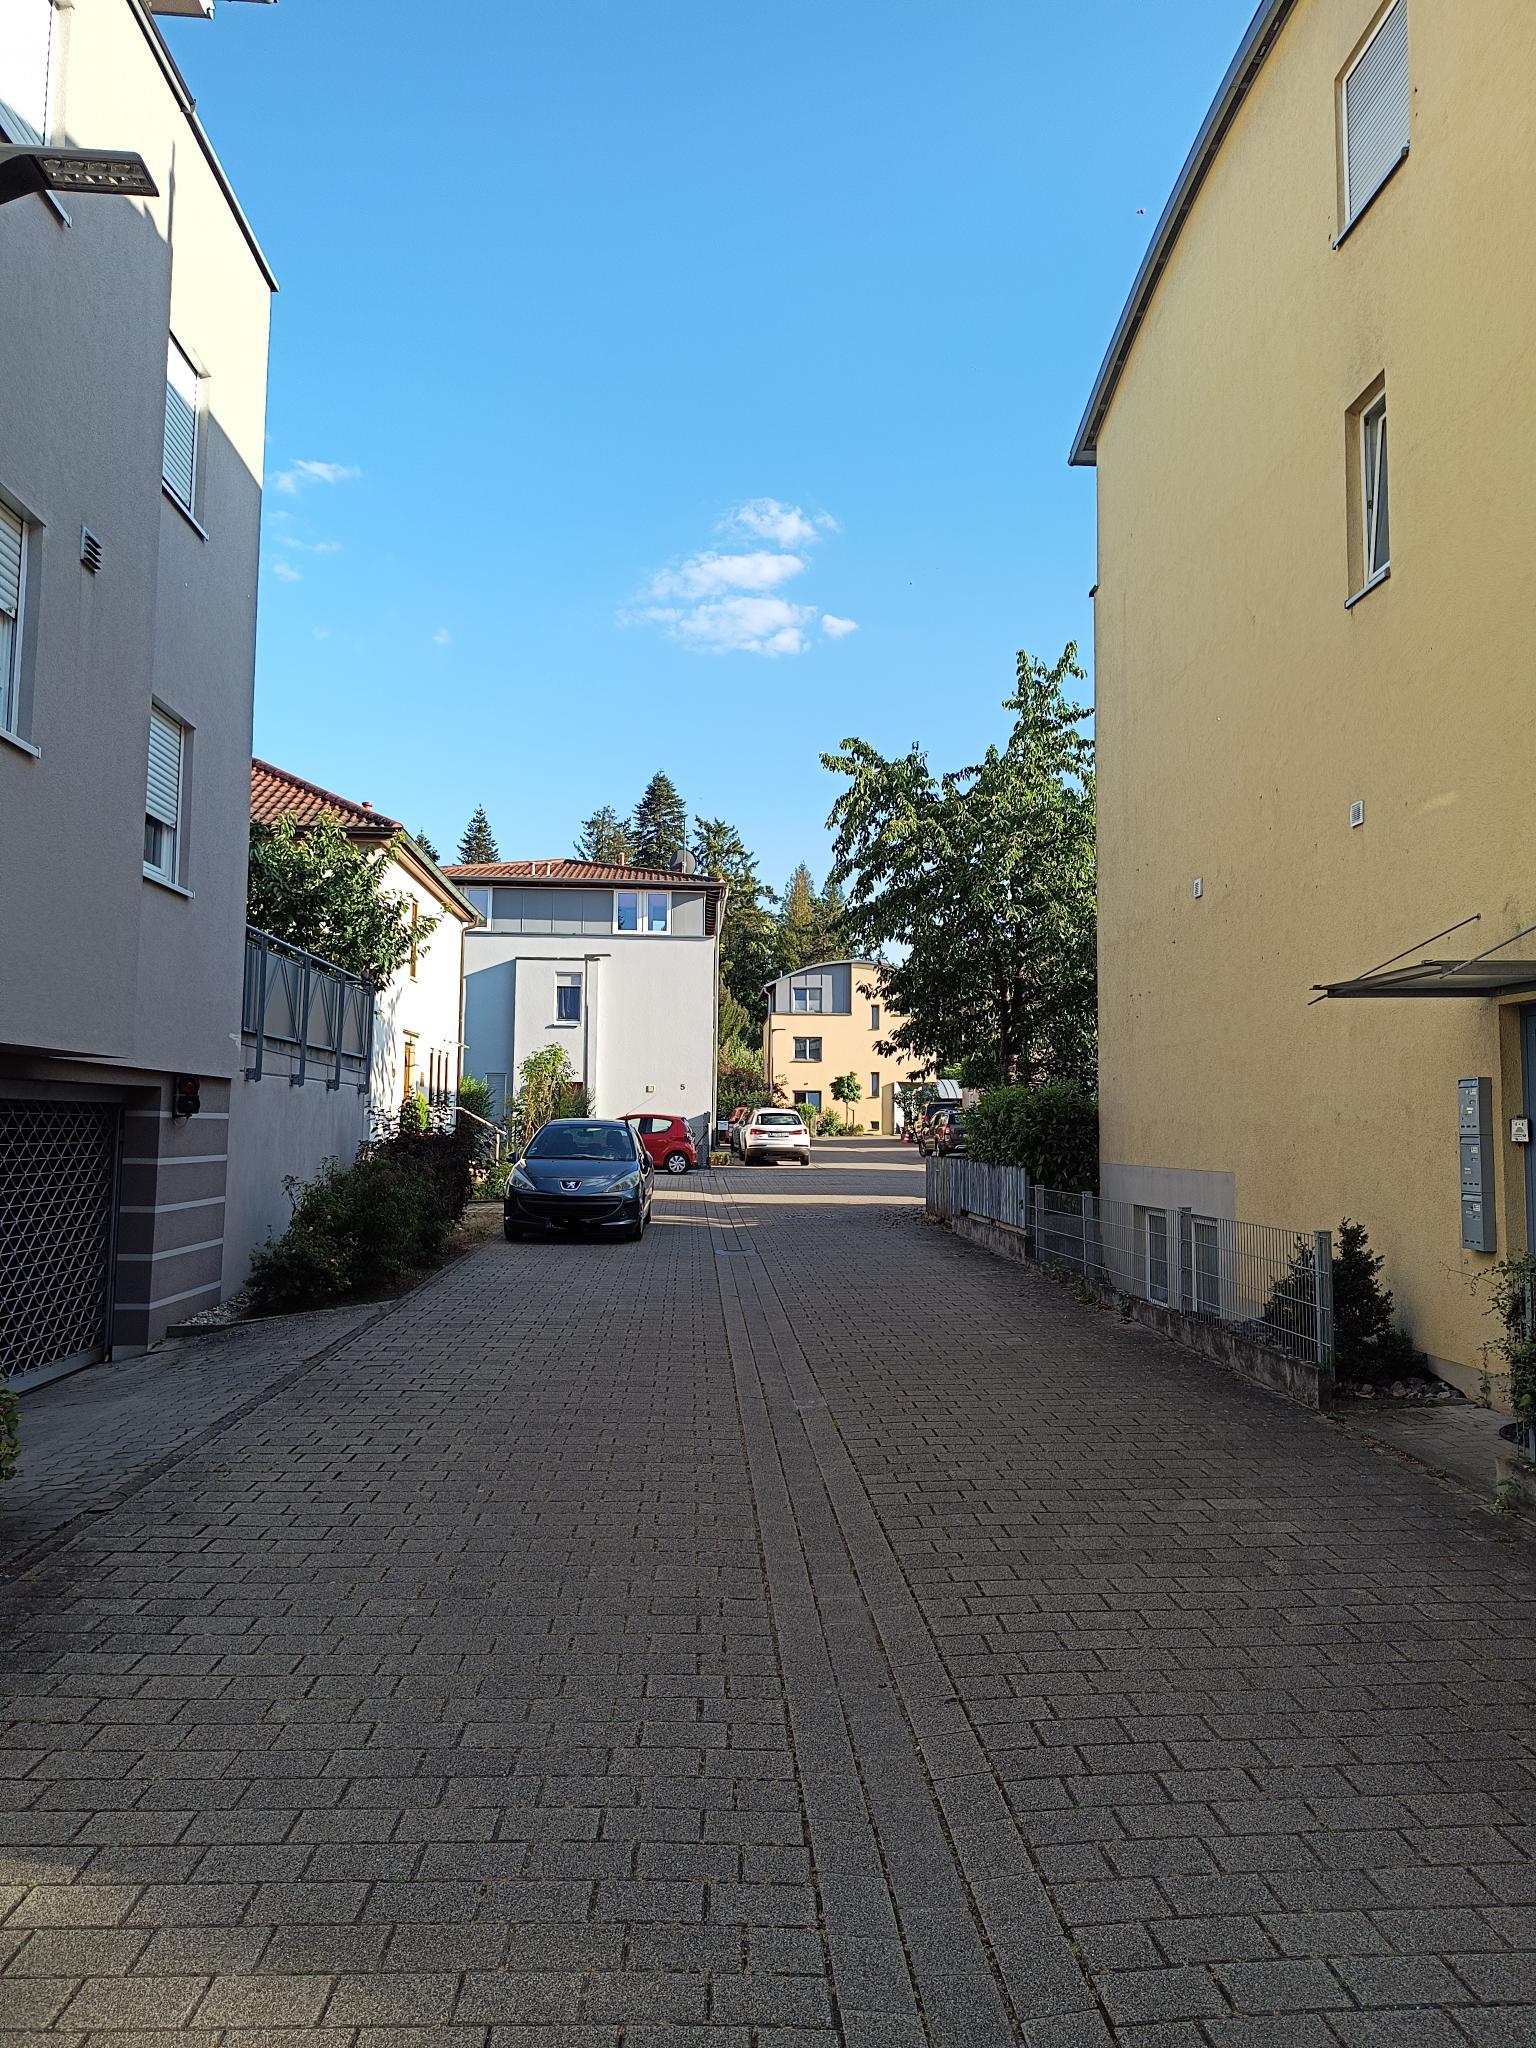 Datei:Fuchsienstraße Landau.jpeg